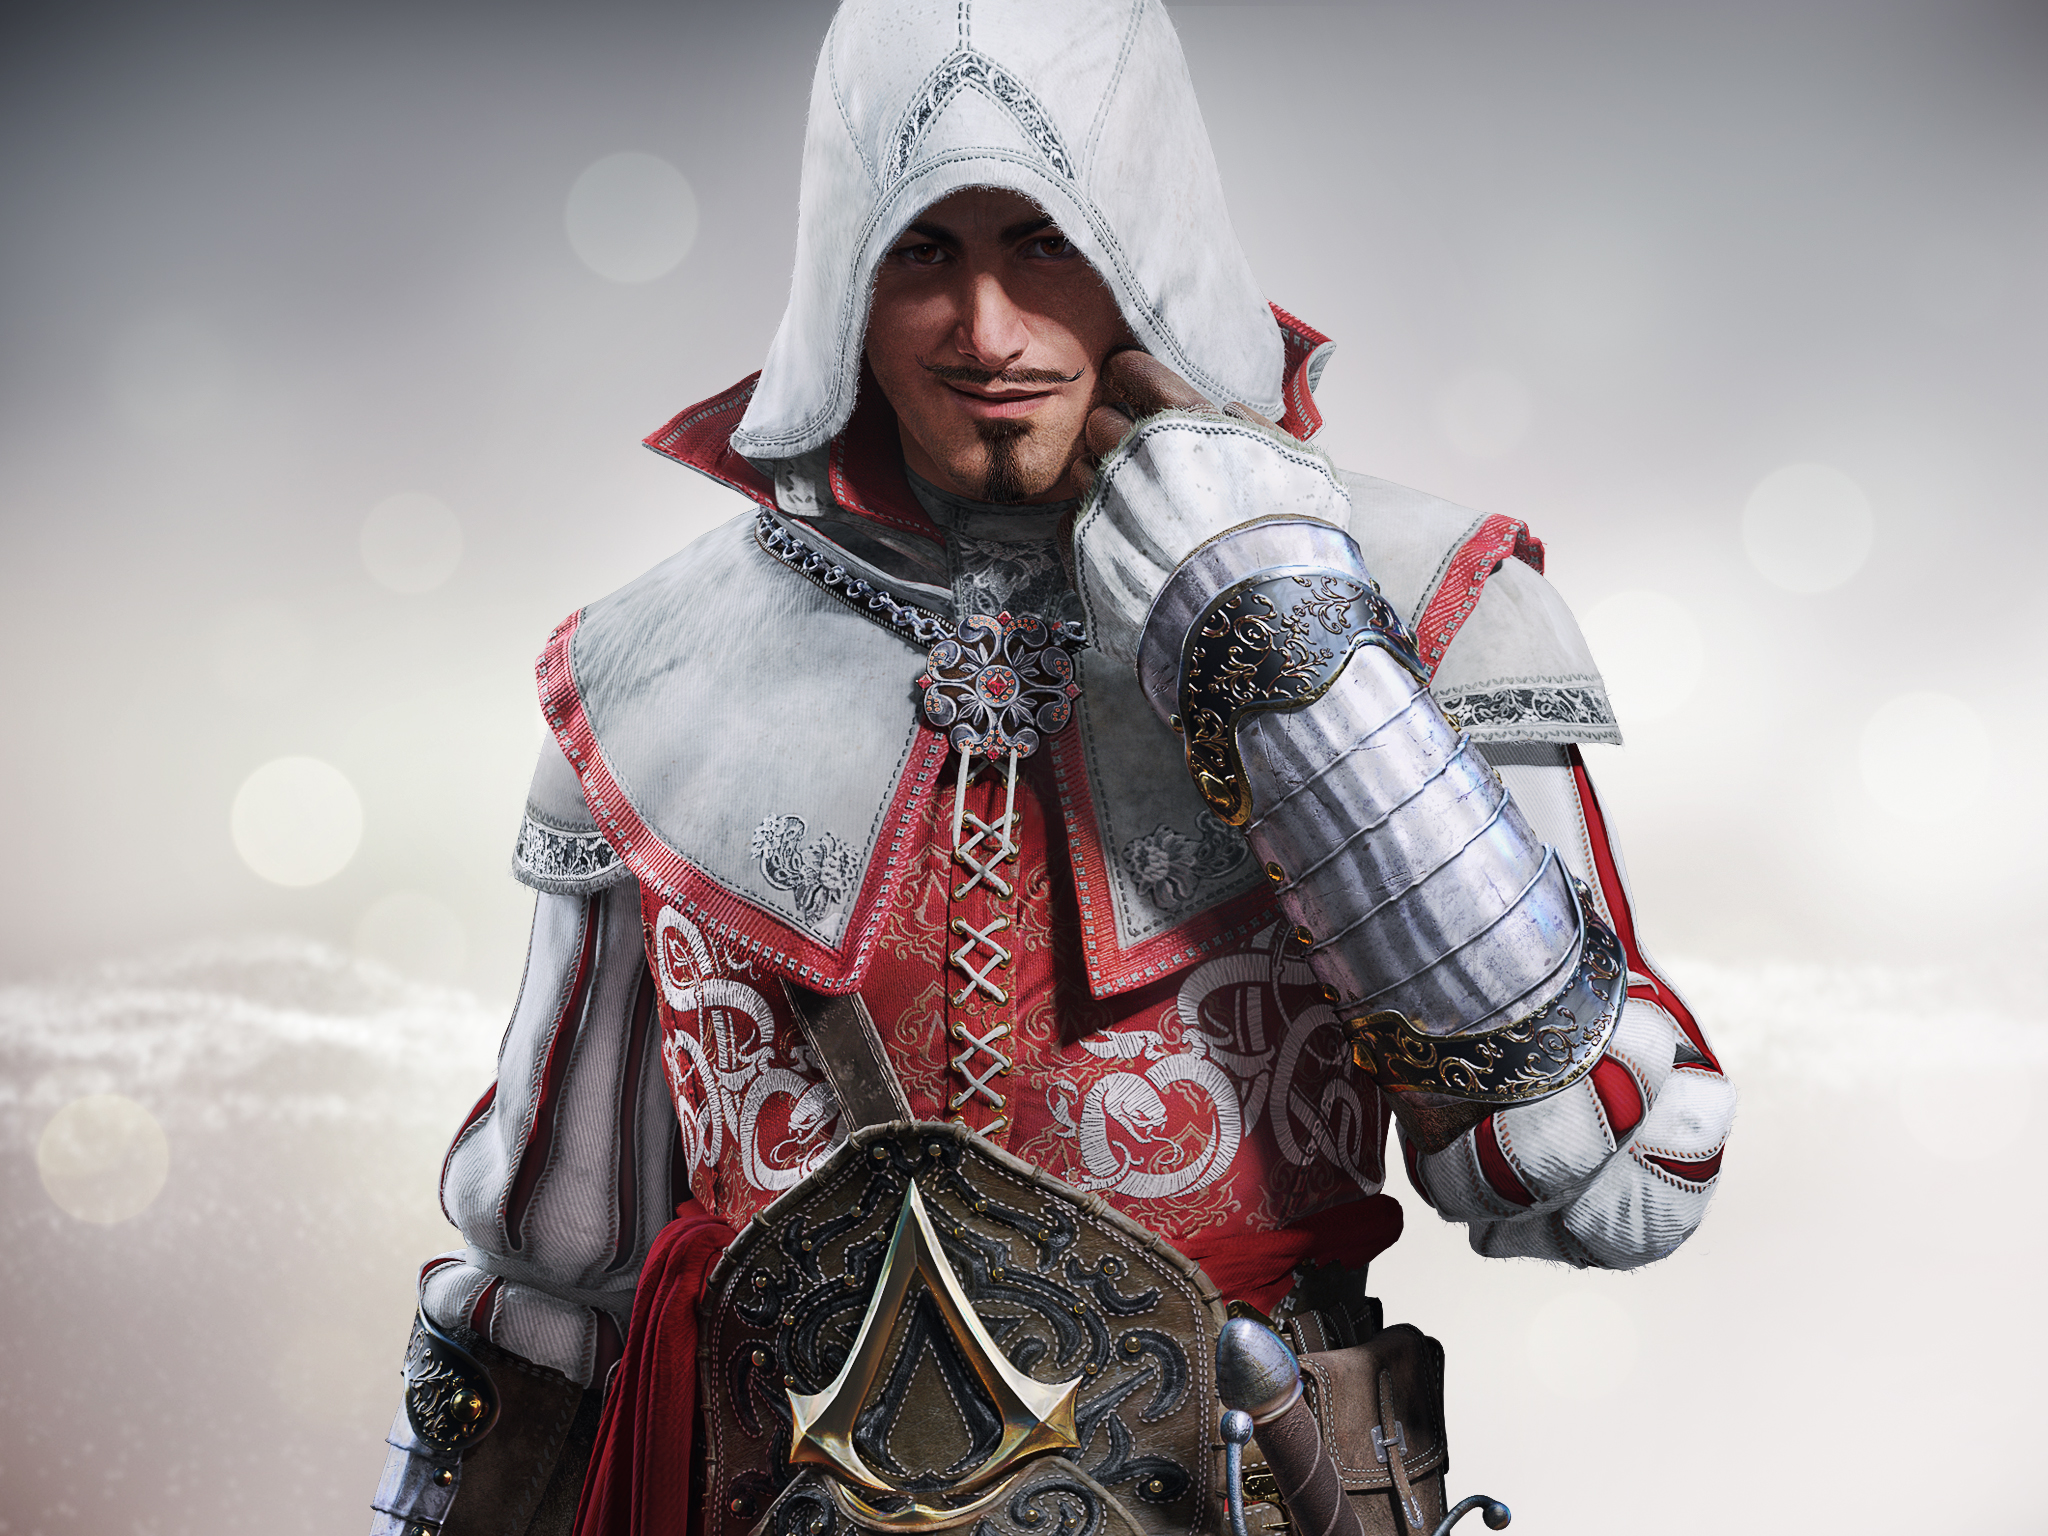 Завантажити шпалери Ідентичність Assassin's Creed на телефон безкоштовно